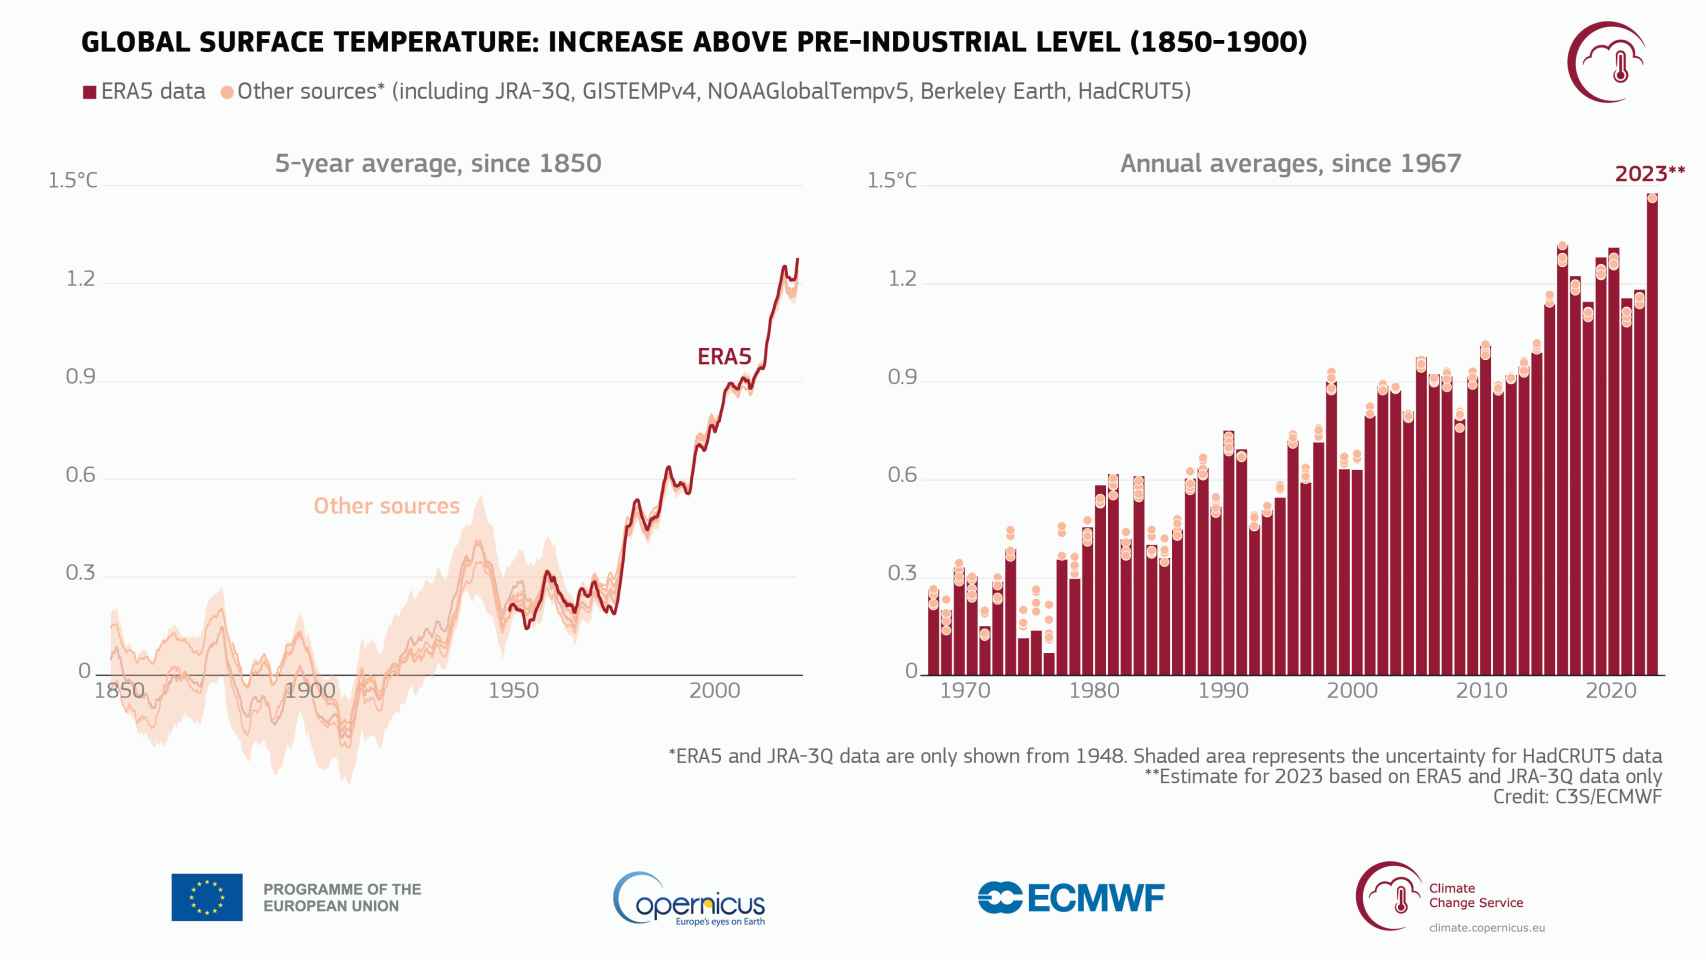 Aumento de la temperatura global del aire en la superficie (1) en relación con el promedio de 1850-1900, el período de referencia preindustrial designado, según varios conjuntos de datos de temperatura global mostrados como promedios de cinco años desde 1850 (izquierda) y como promedios anuales desde 1967 (derecha).